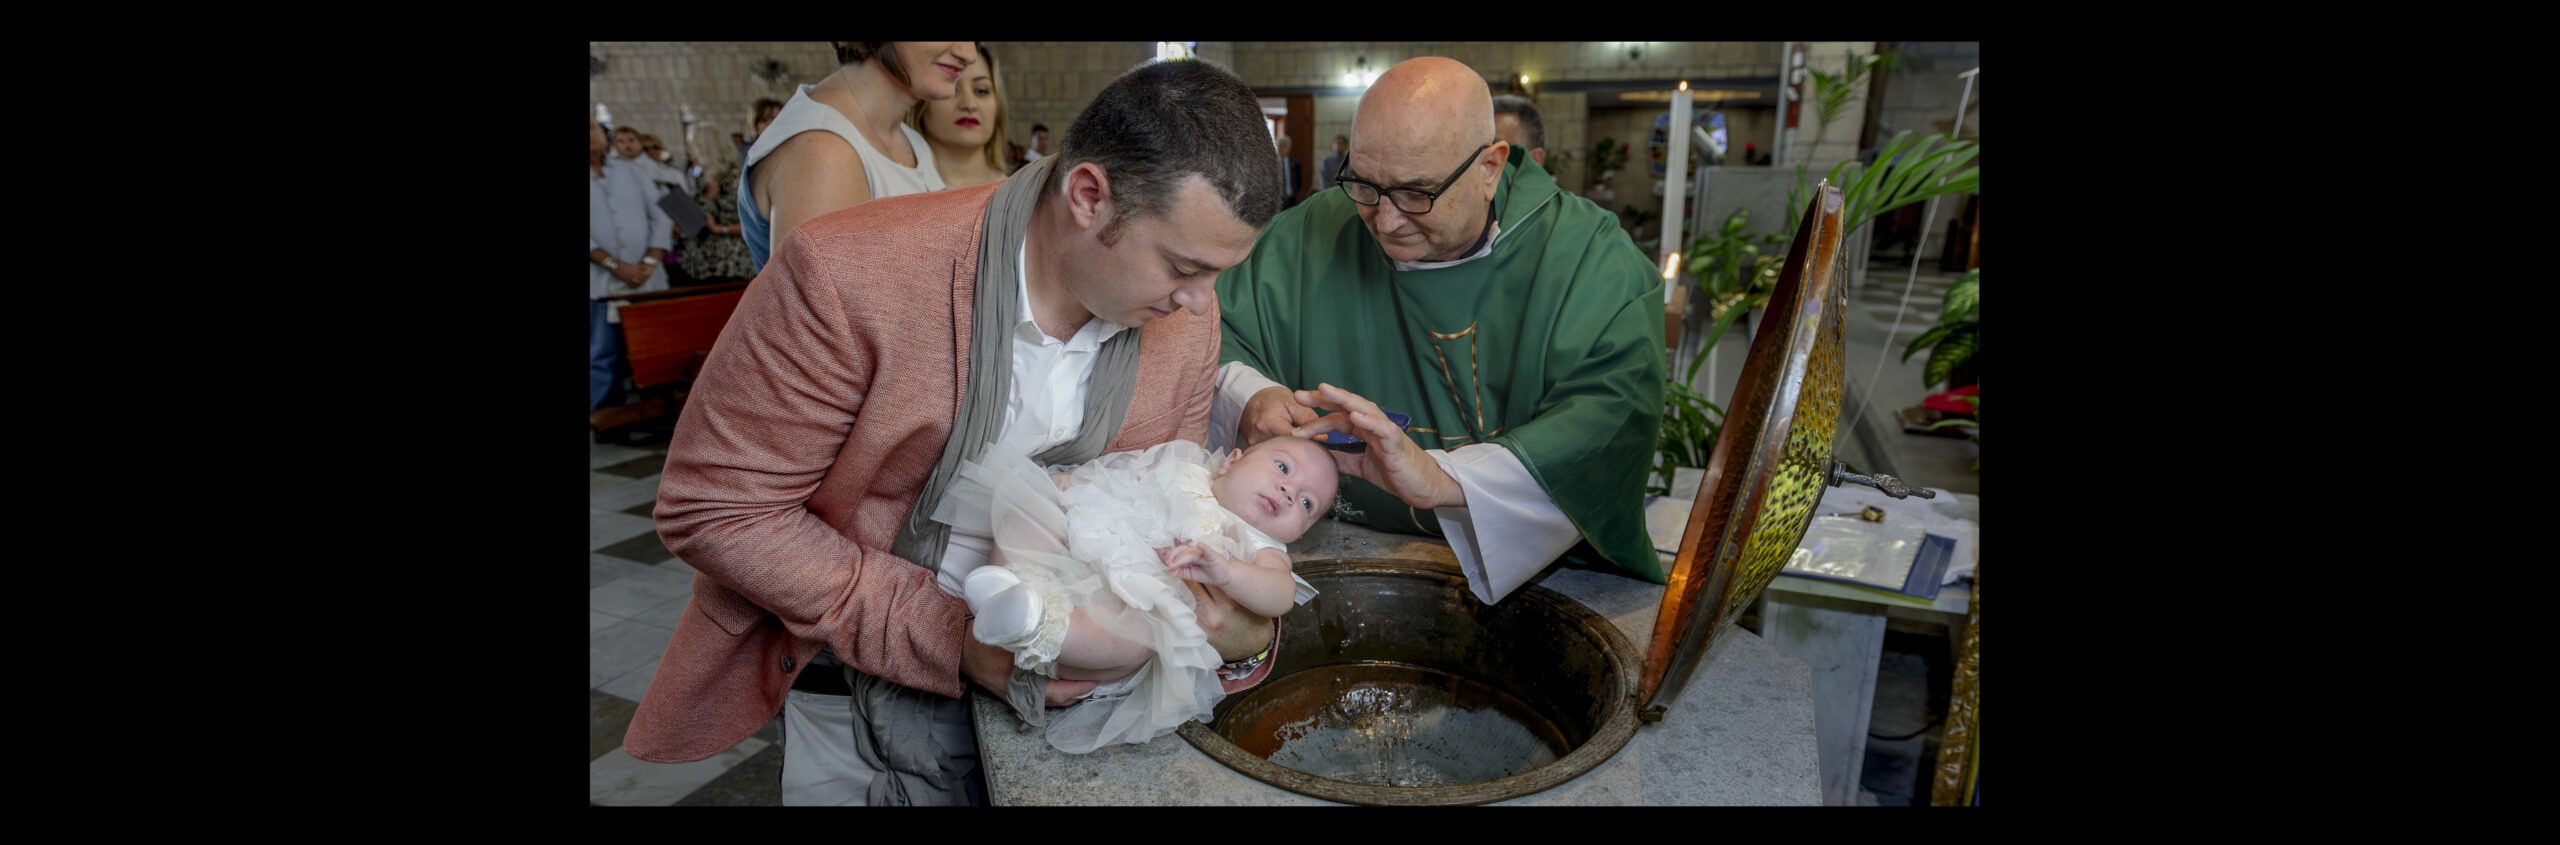 Servizio fotografico per battesimo